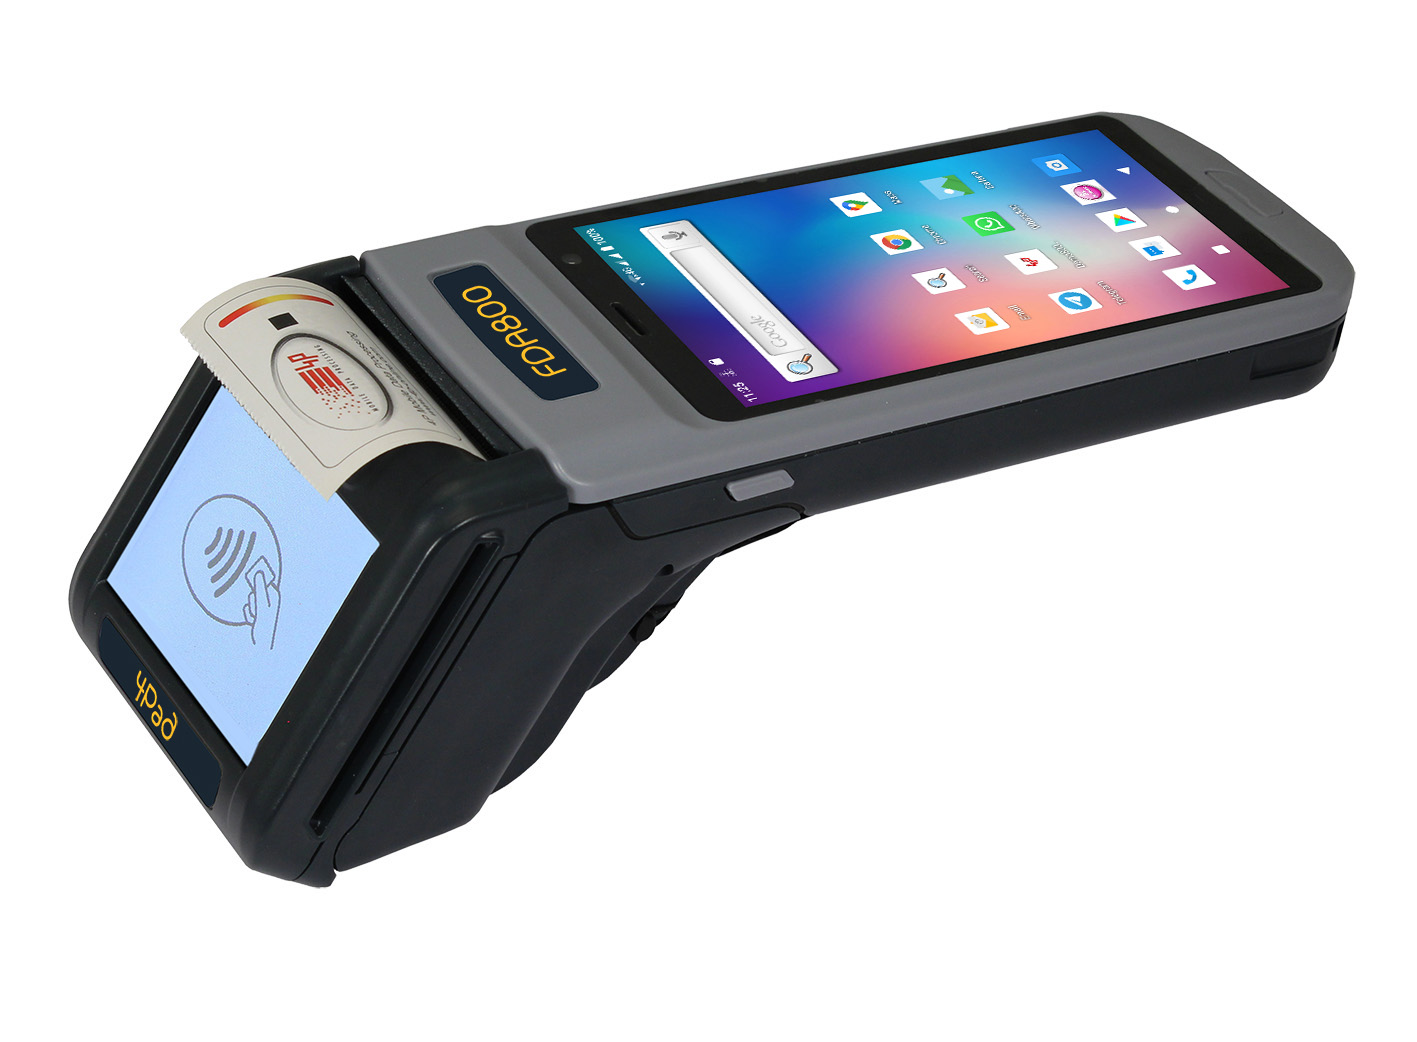 FDA800 robustes ALL-IN-ONE Android -Smartphone mit integriertem EFTPOS für elektronische Zahlungen